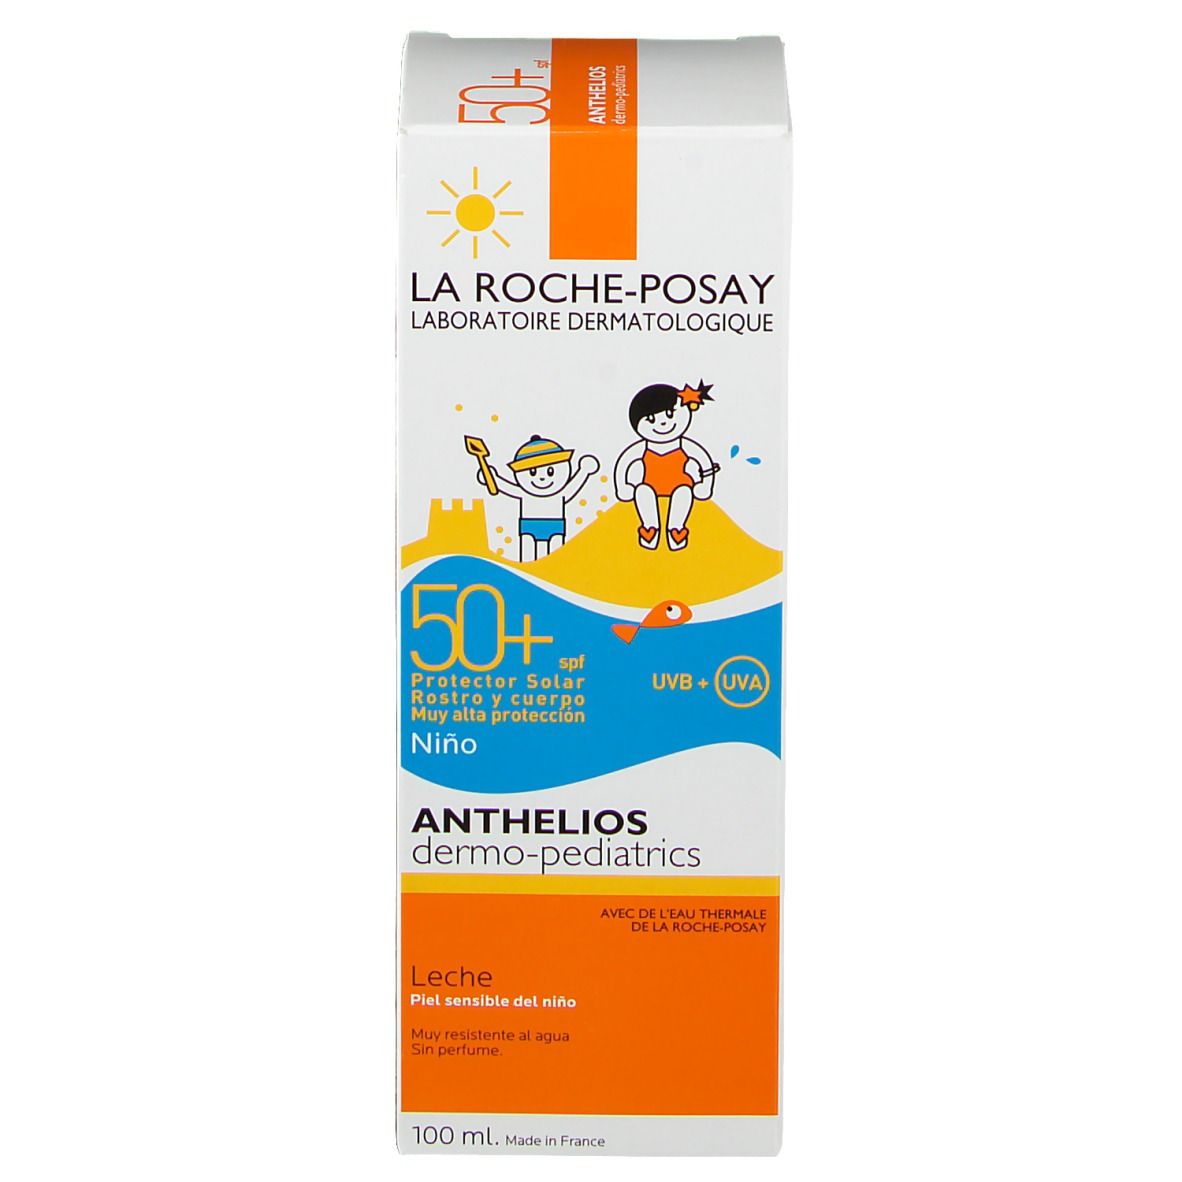 La Roche-Posay Anthelios Latte Solare Corpo Baby SPF 50+